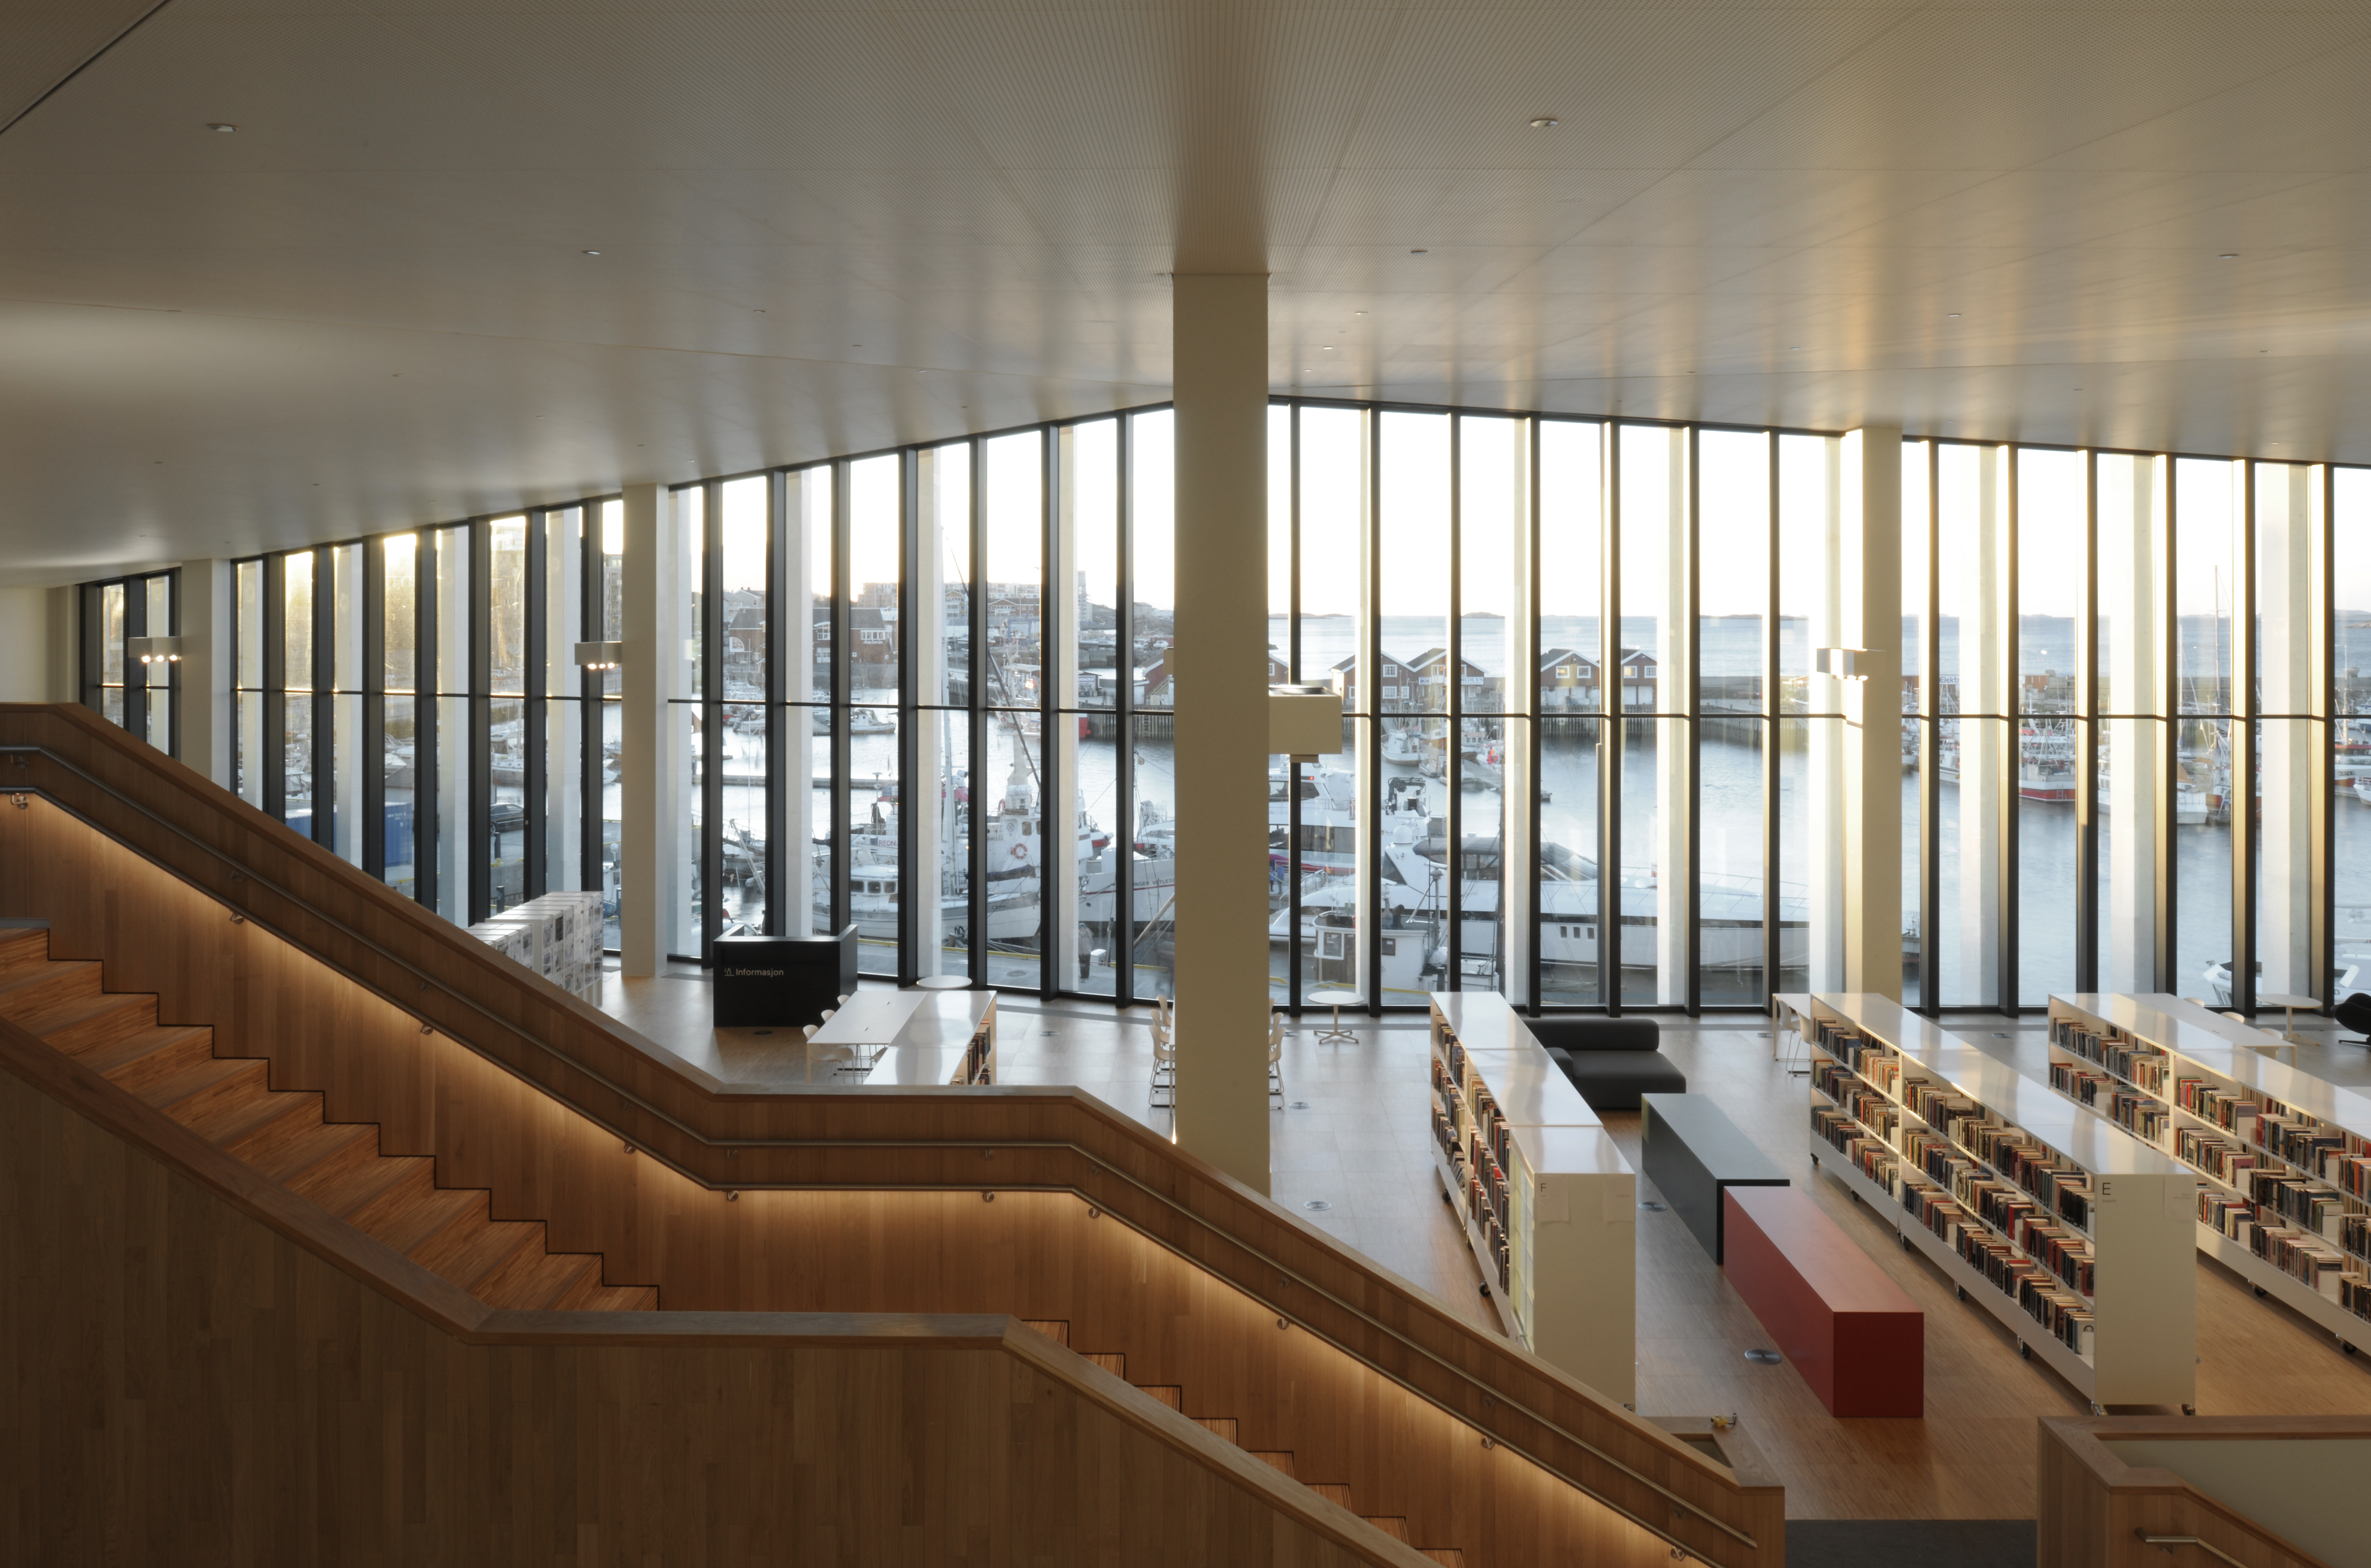 Compiled library. Библиотека в Норвегии. Библиотека Модерн здание. Концертный зал публичной библиотеки. DRDH Architects.